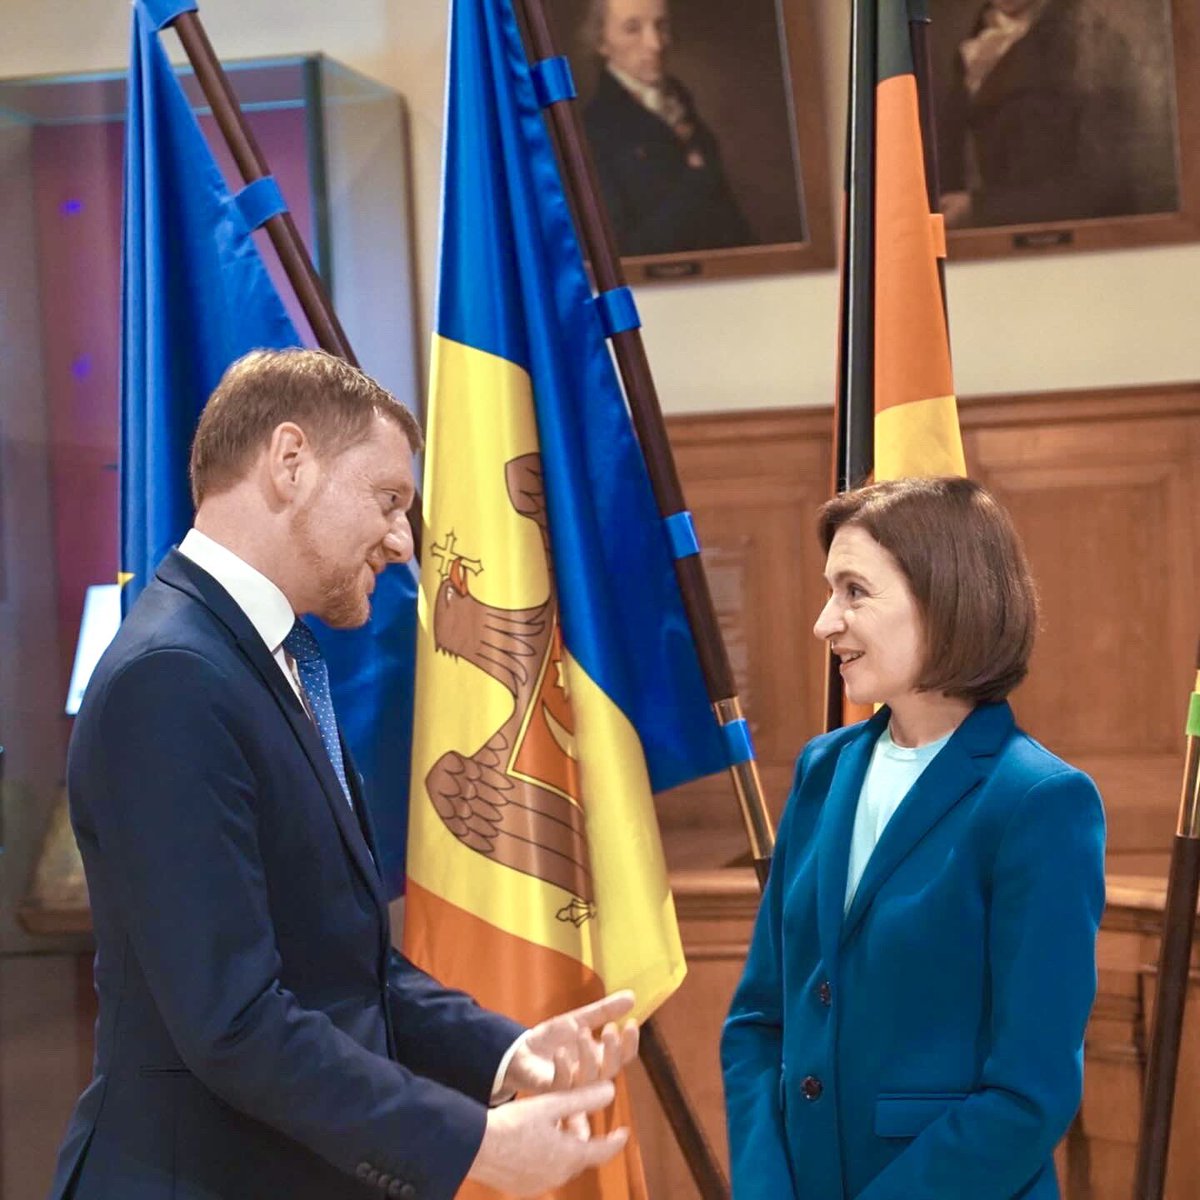 Die Demokratie zu stärken ist aktuell wichtiger denn je. Präsidentin der Republik Moldau Maia Sandu steht für ein friedliches, gutes Leben in unserer EU, Gleichberechtigung, für die Rechtsstaatlichkeit, das Miteinander. Herzlichen Glückwunsch zum Leipziger Robert-Blum-Preis für